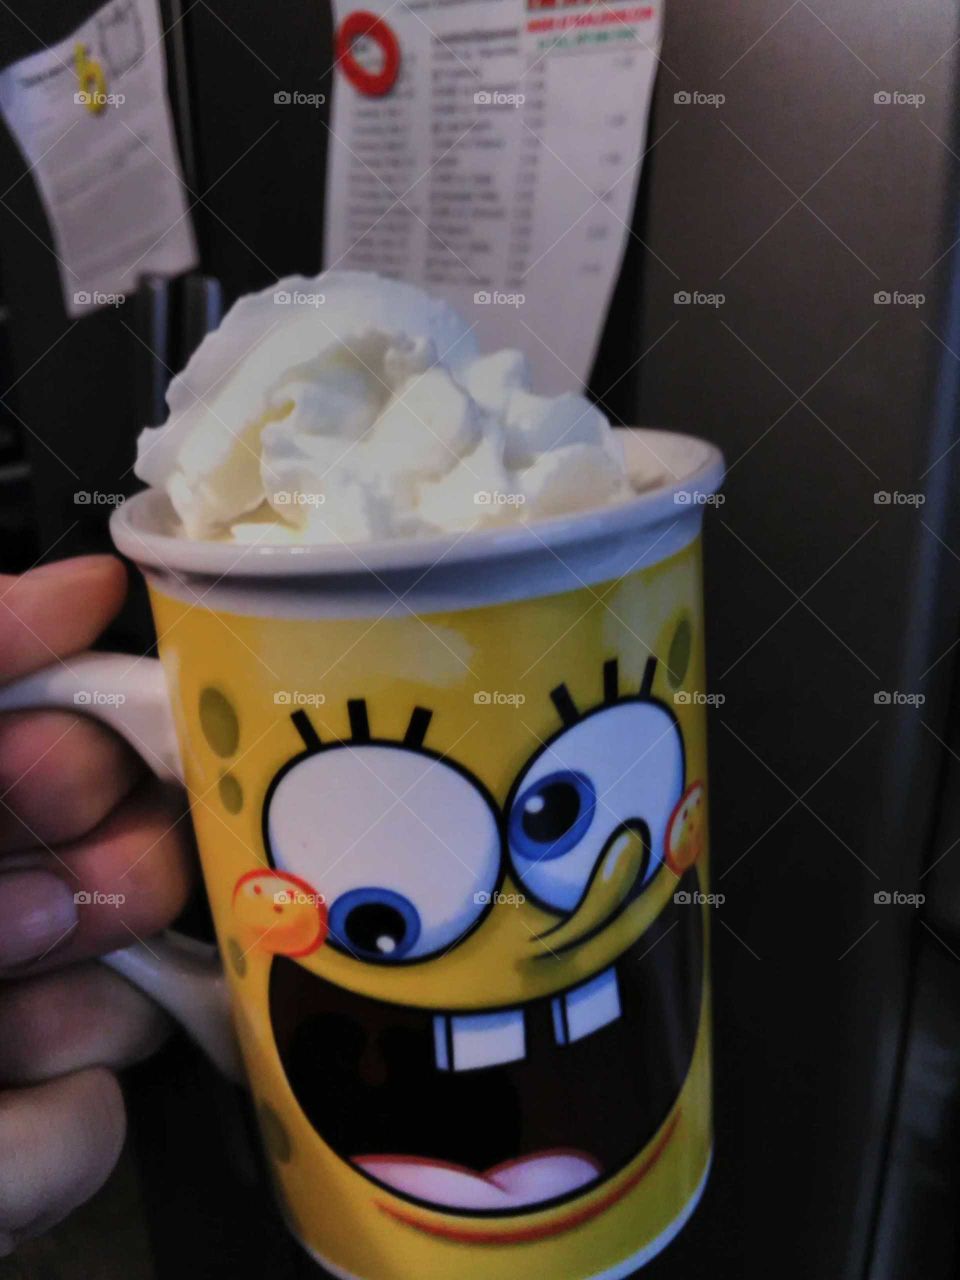 spongebob coffee mug coffee with whipped cream